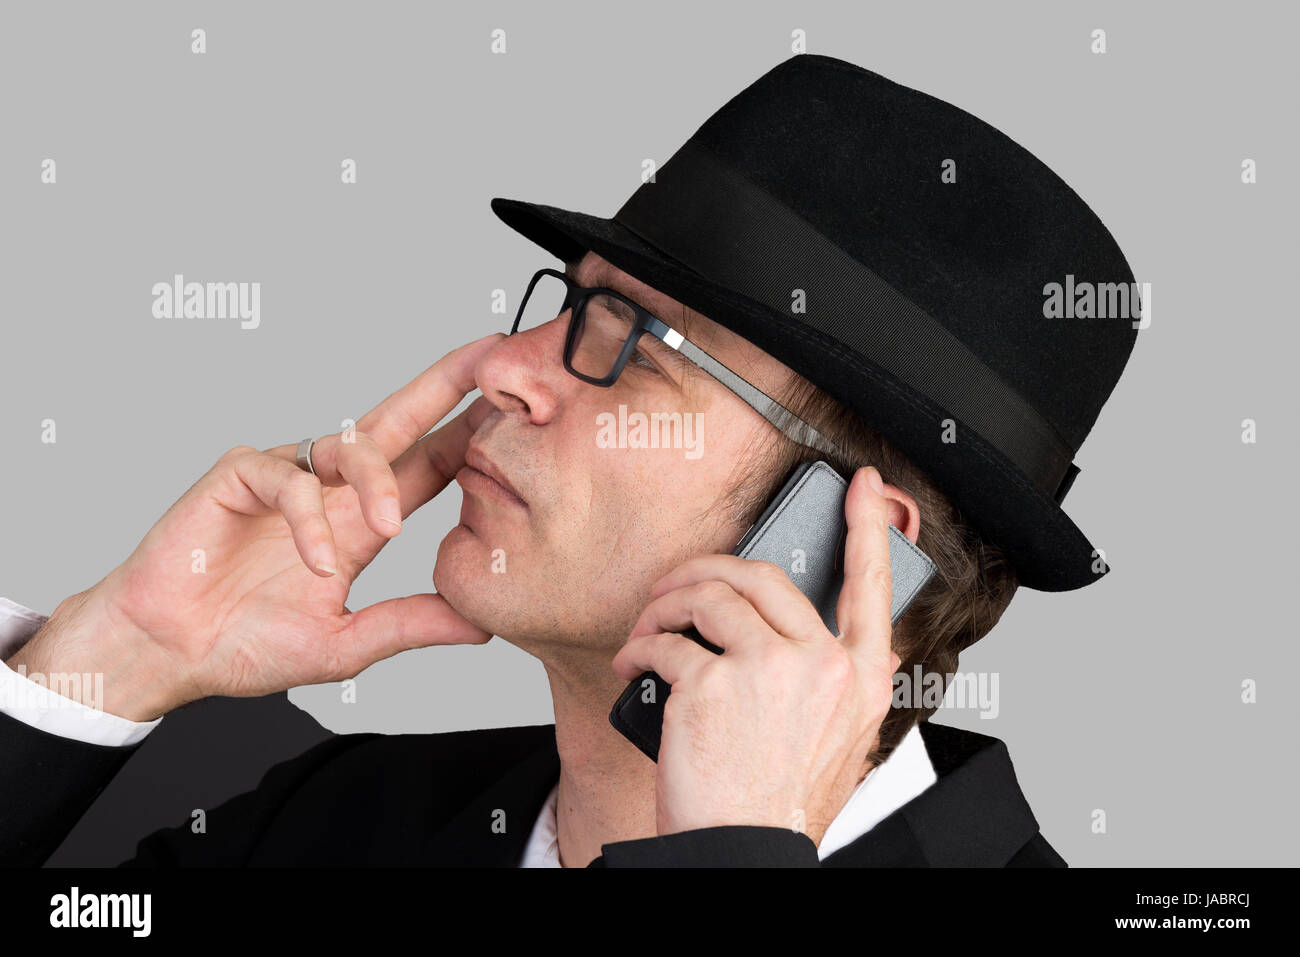 Portrait Moyen Âge européen man making a phone call Banque D'Images